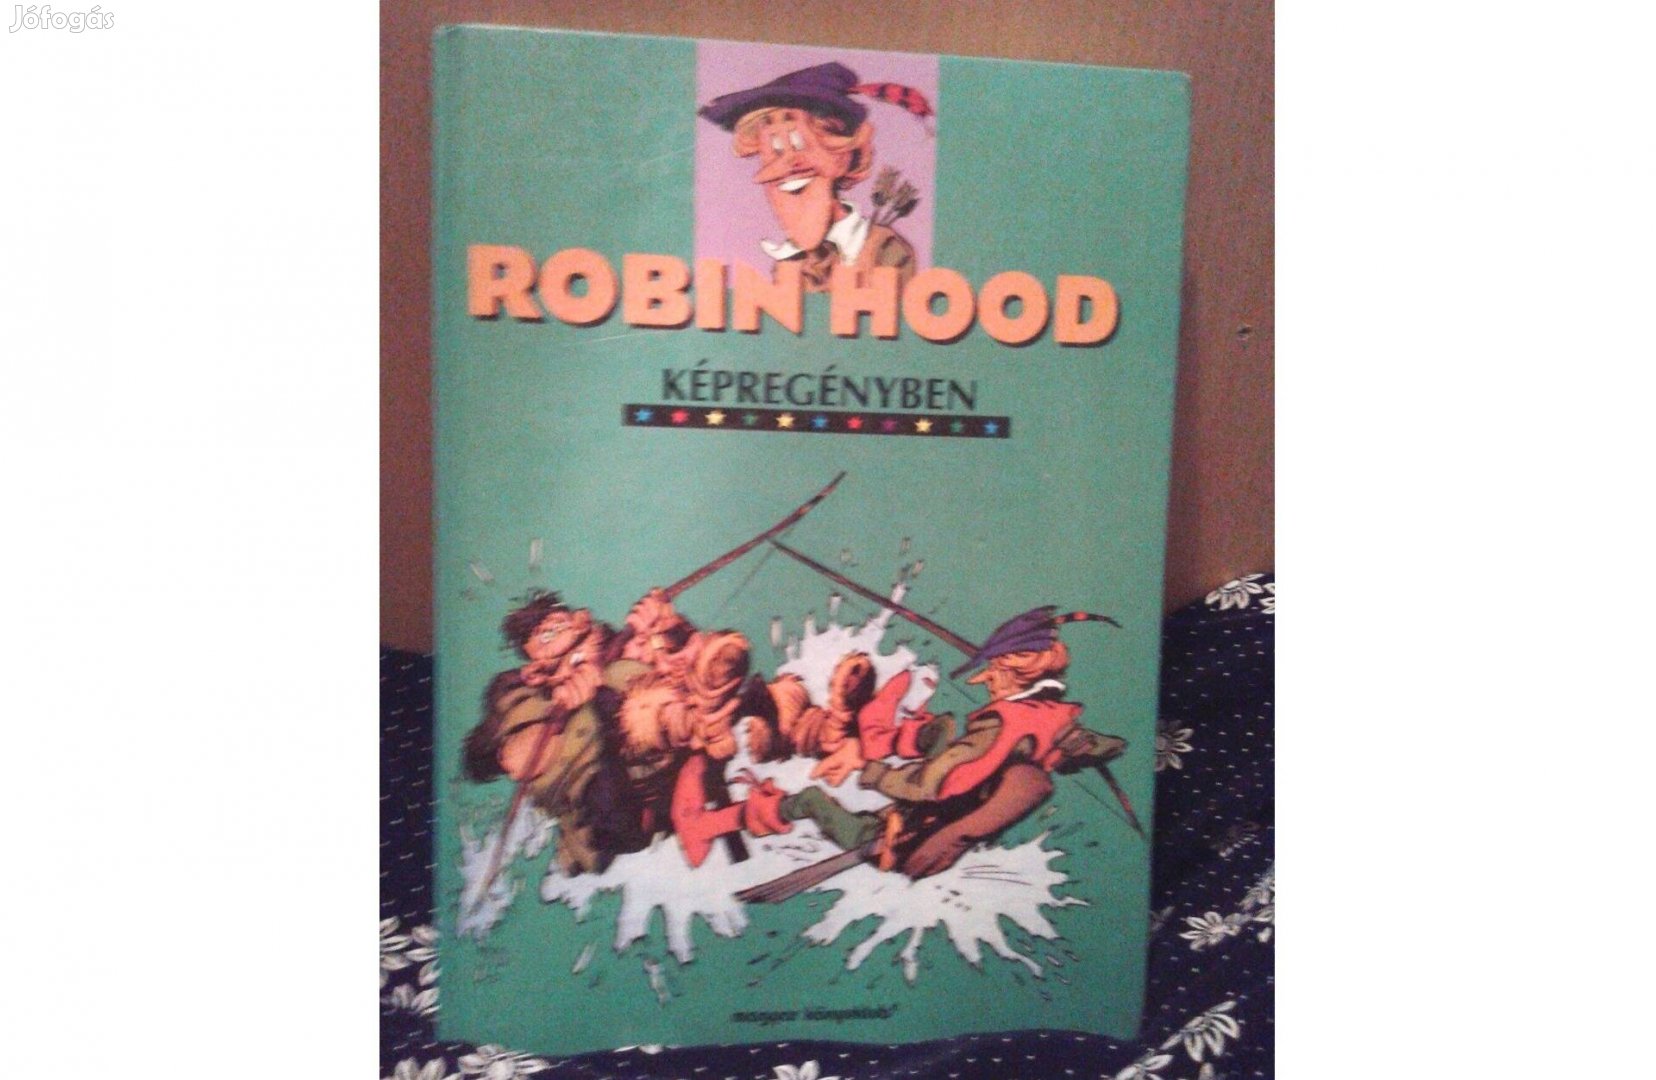 Robin Hood képregényben